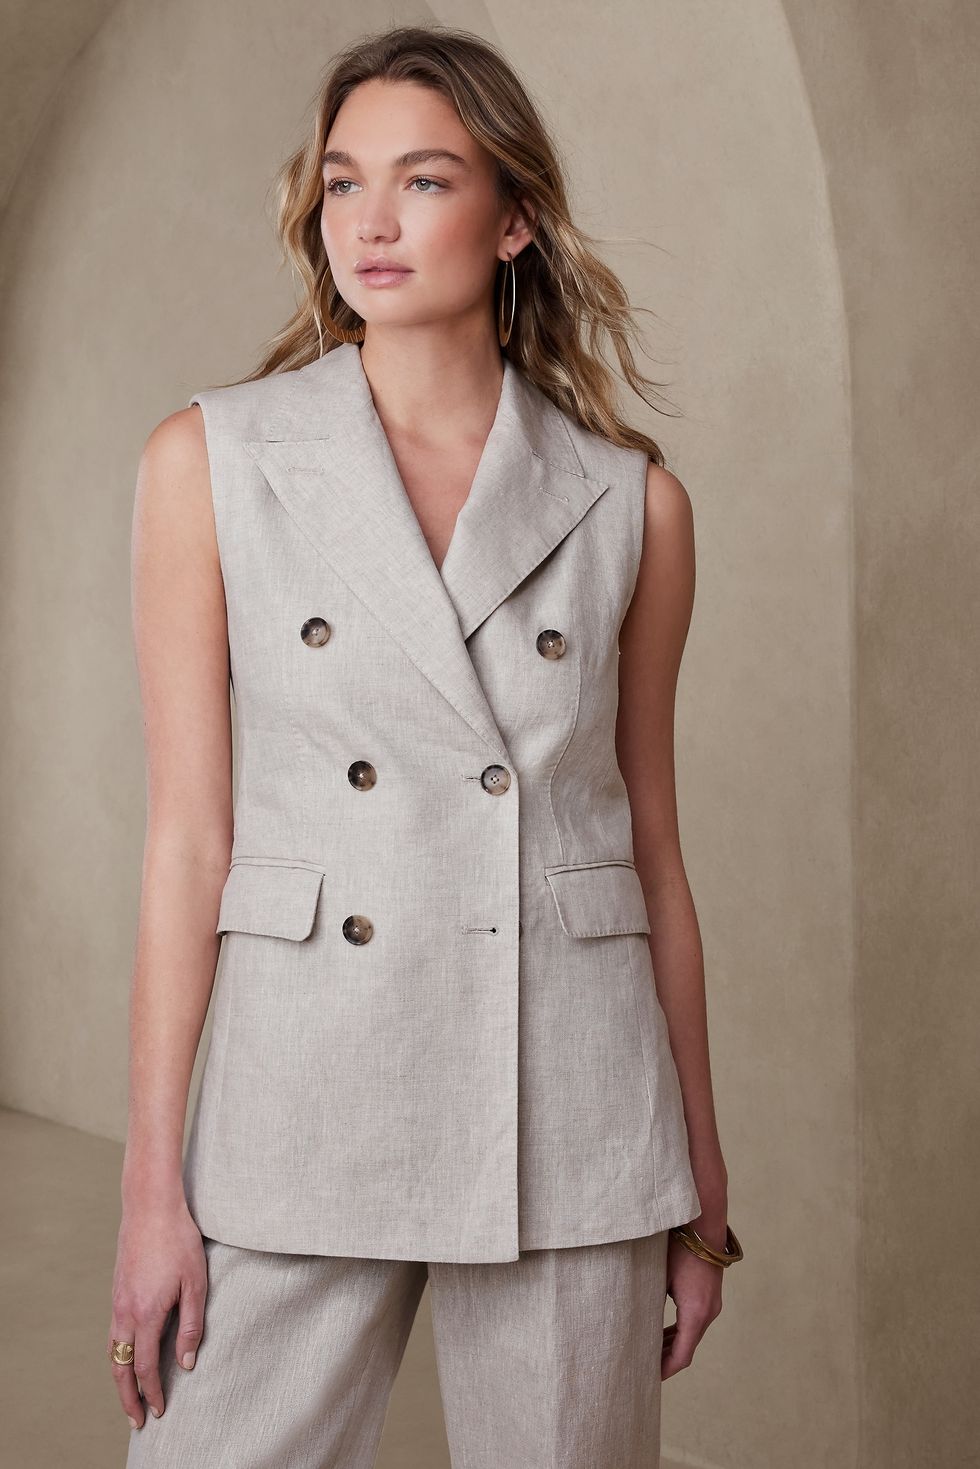 12 Women's Waistcoats, Vests to Wear 2023